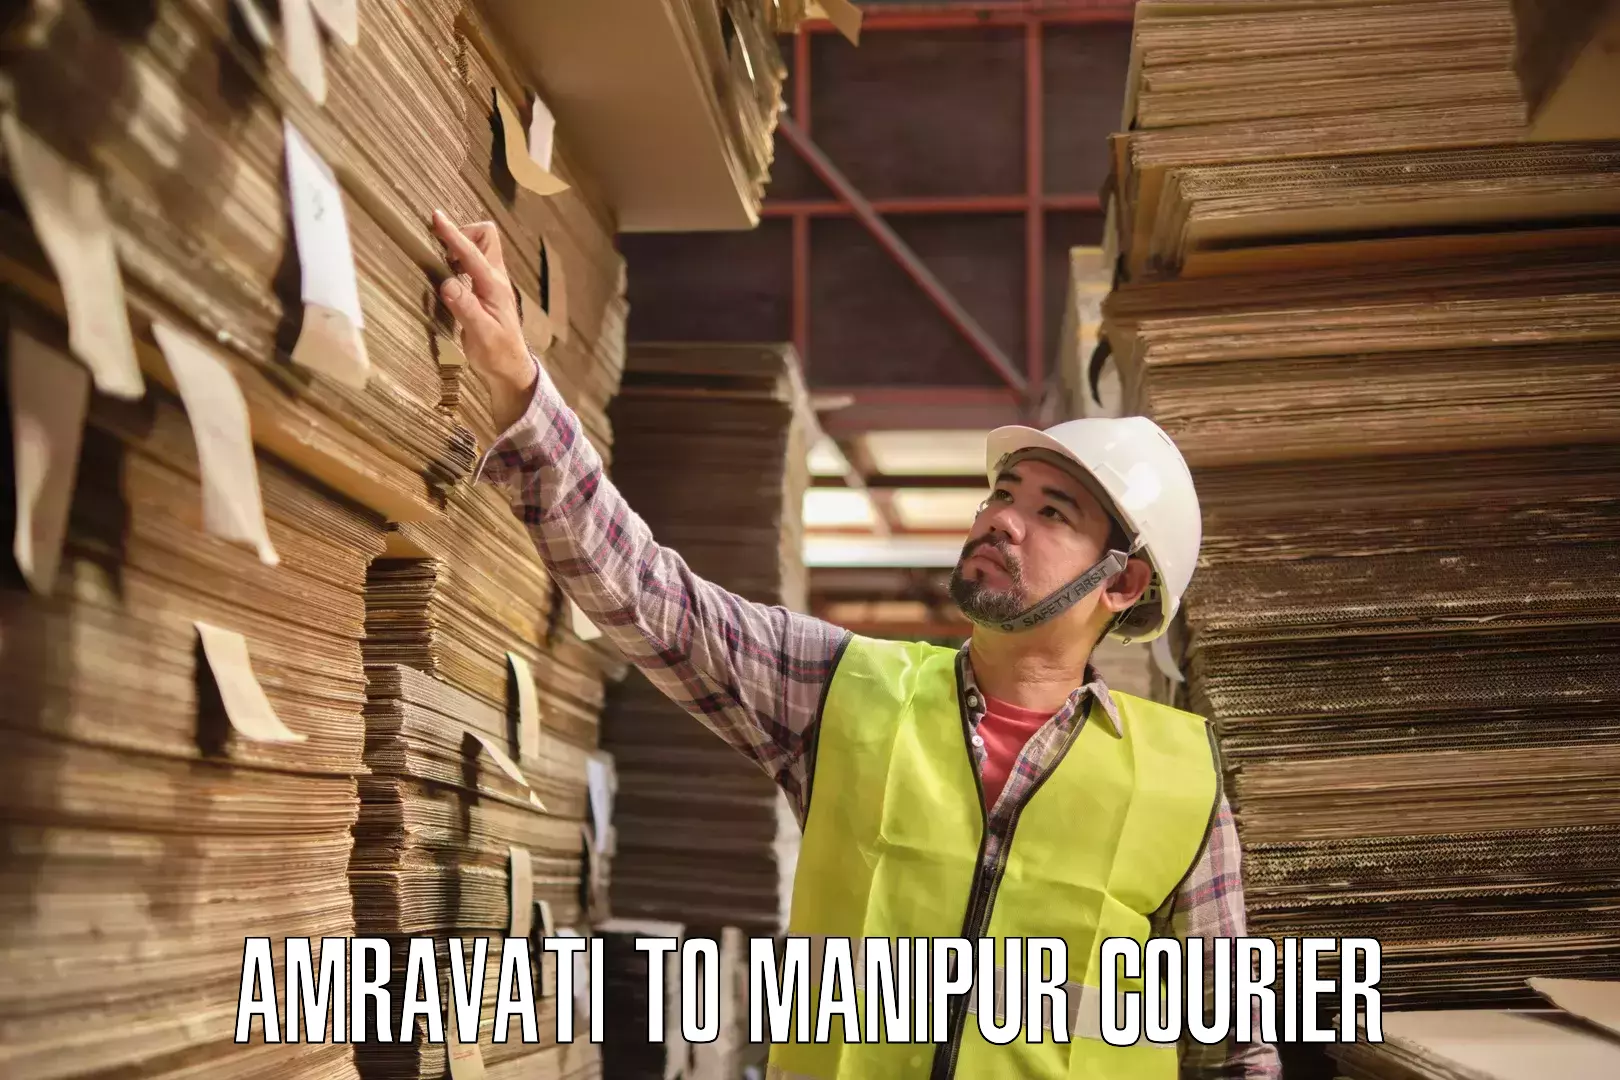 Expedited shipping methods Amravati to Imphal